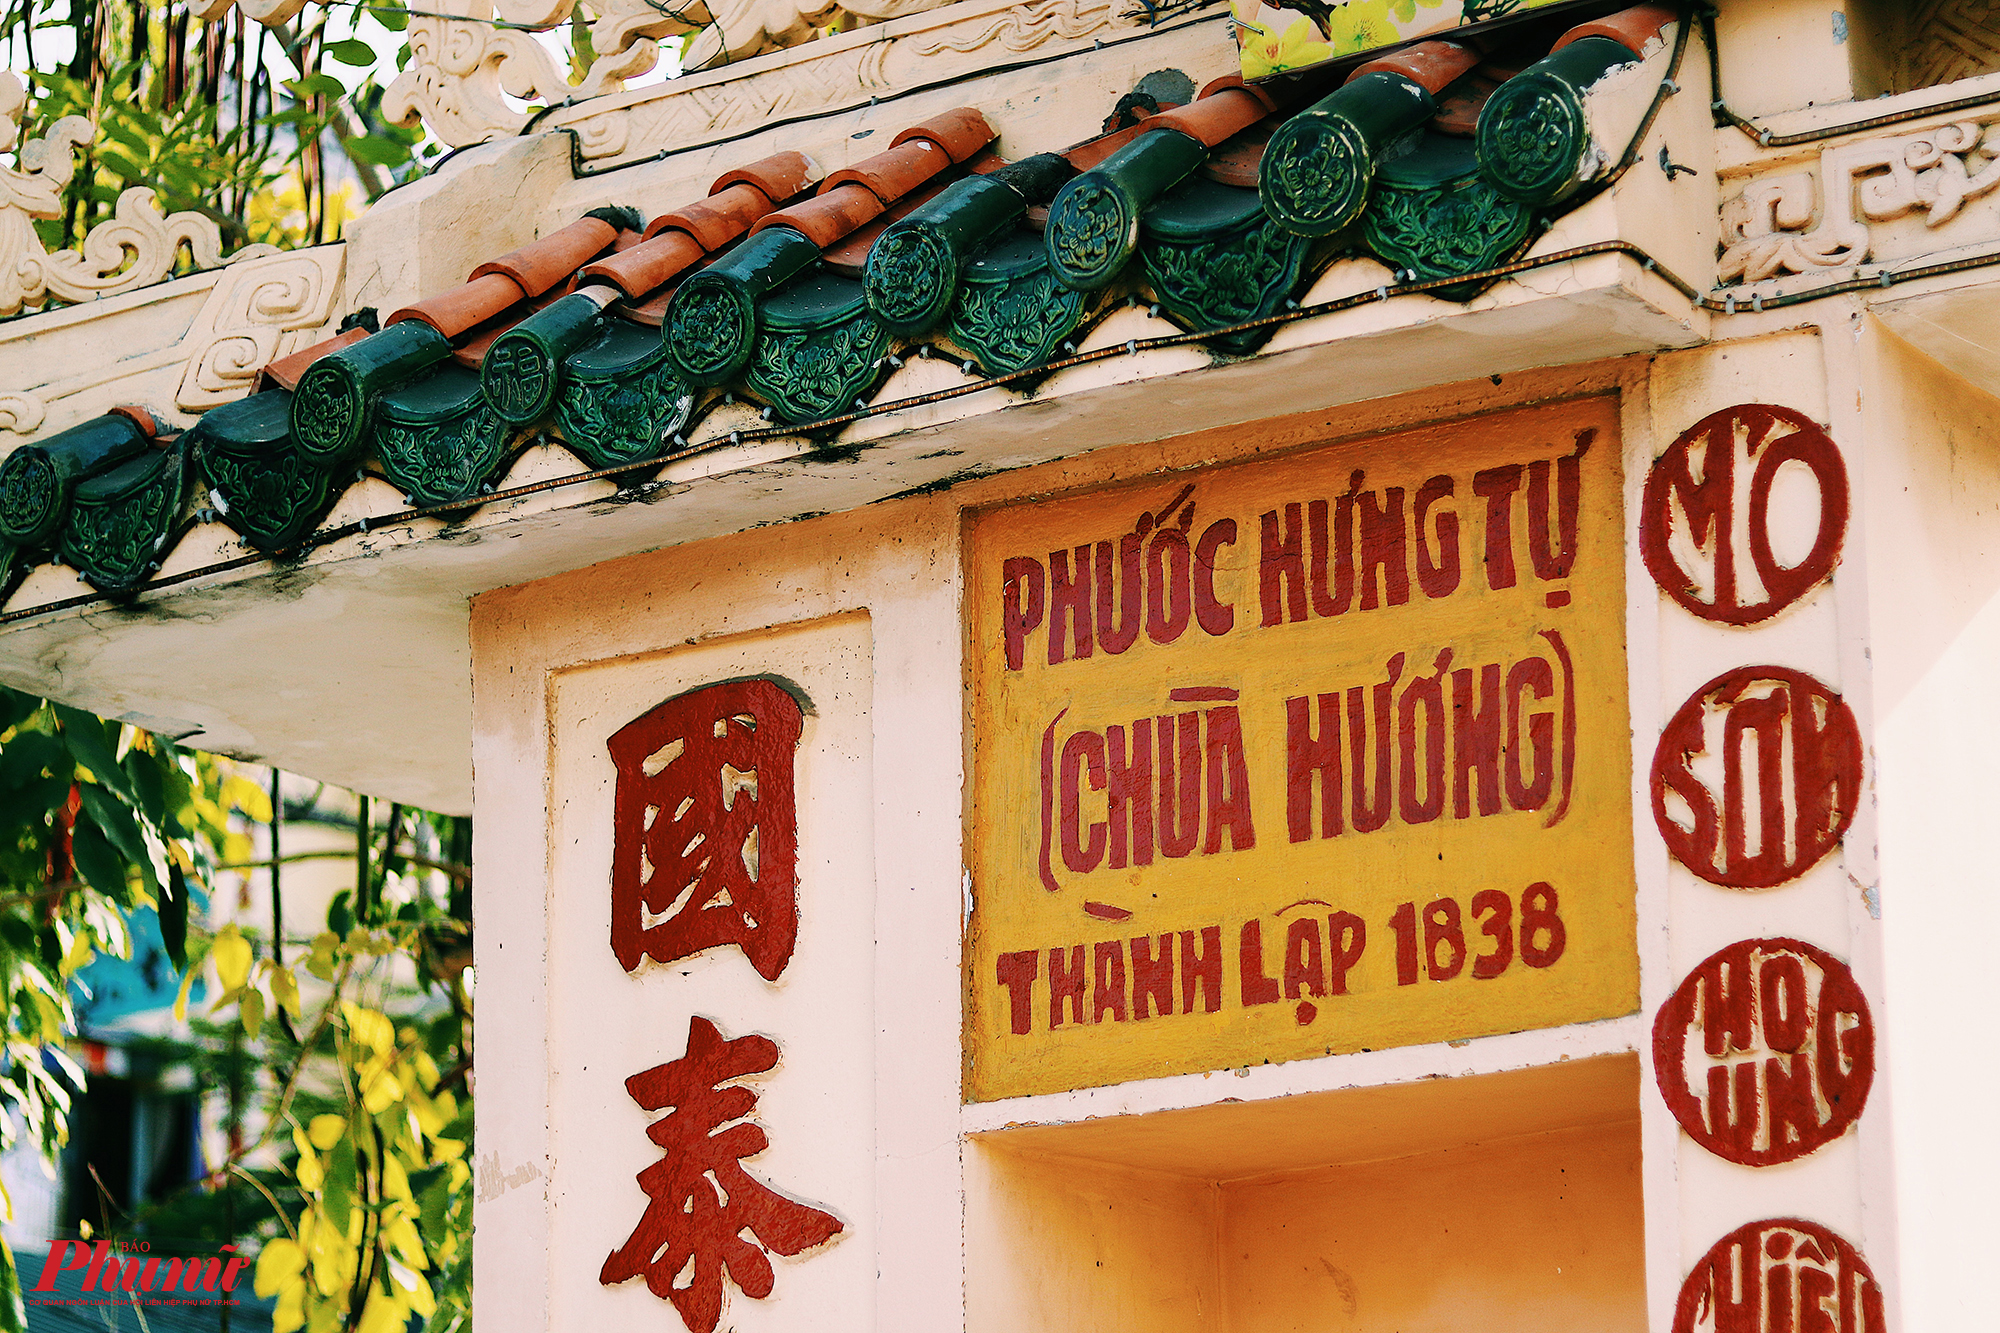 Phước Hưng Tự được xây dựng năm 1838. Ngay từ cổng vào chùa, du khách có thể nhìn thấy thông tin này thông qua những dòng chữ mang màu sắc cổ xưa.